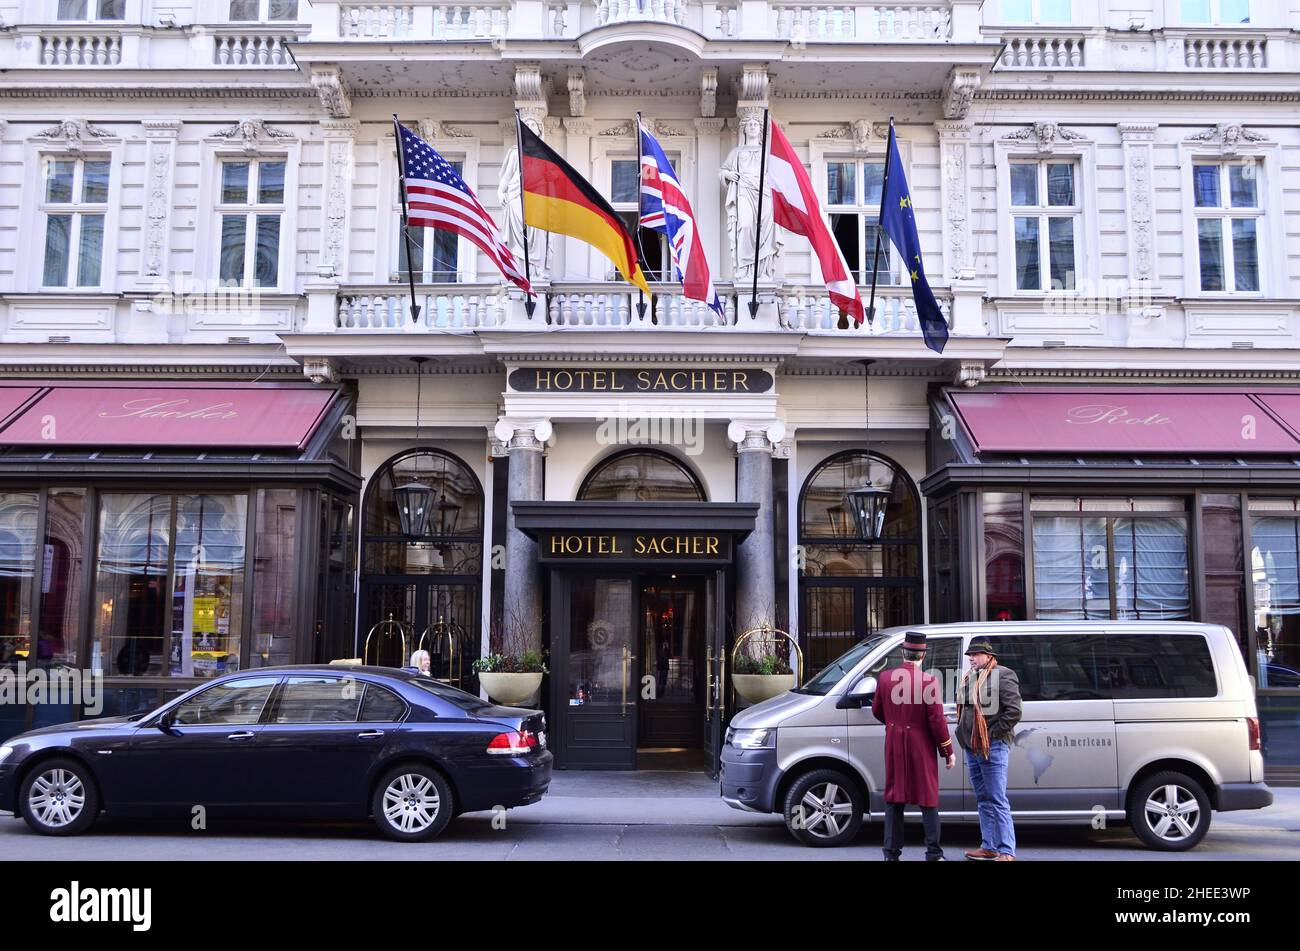 Hotel Sacher, entrée de l'hôtel cinq étoiles à Innere Stadt, quartier central de Vienne Autriche. Banque D'Images